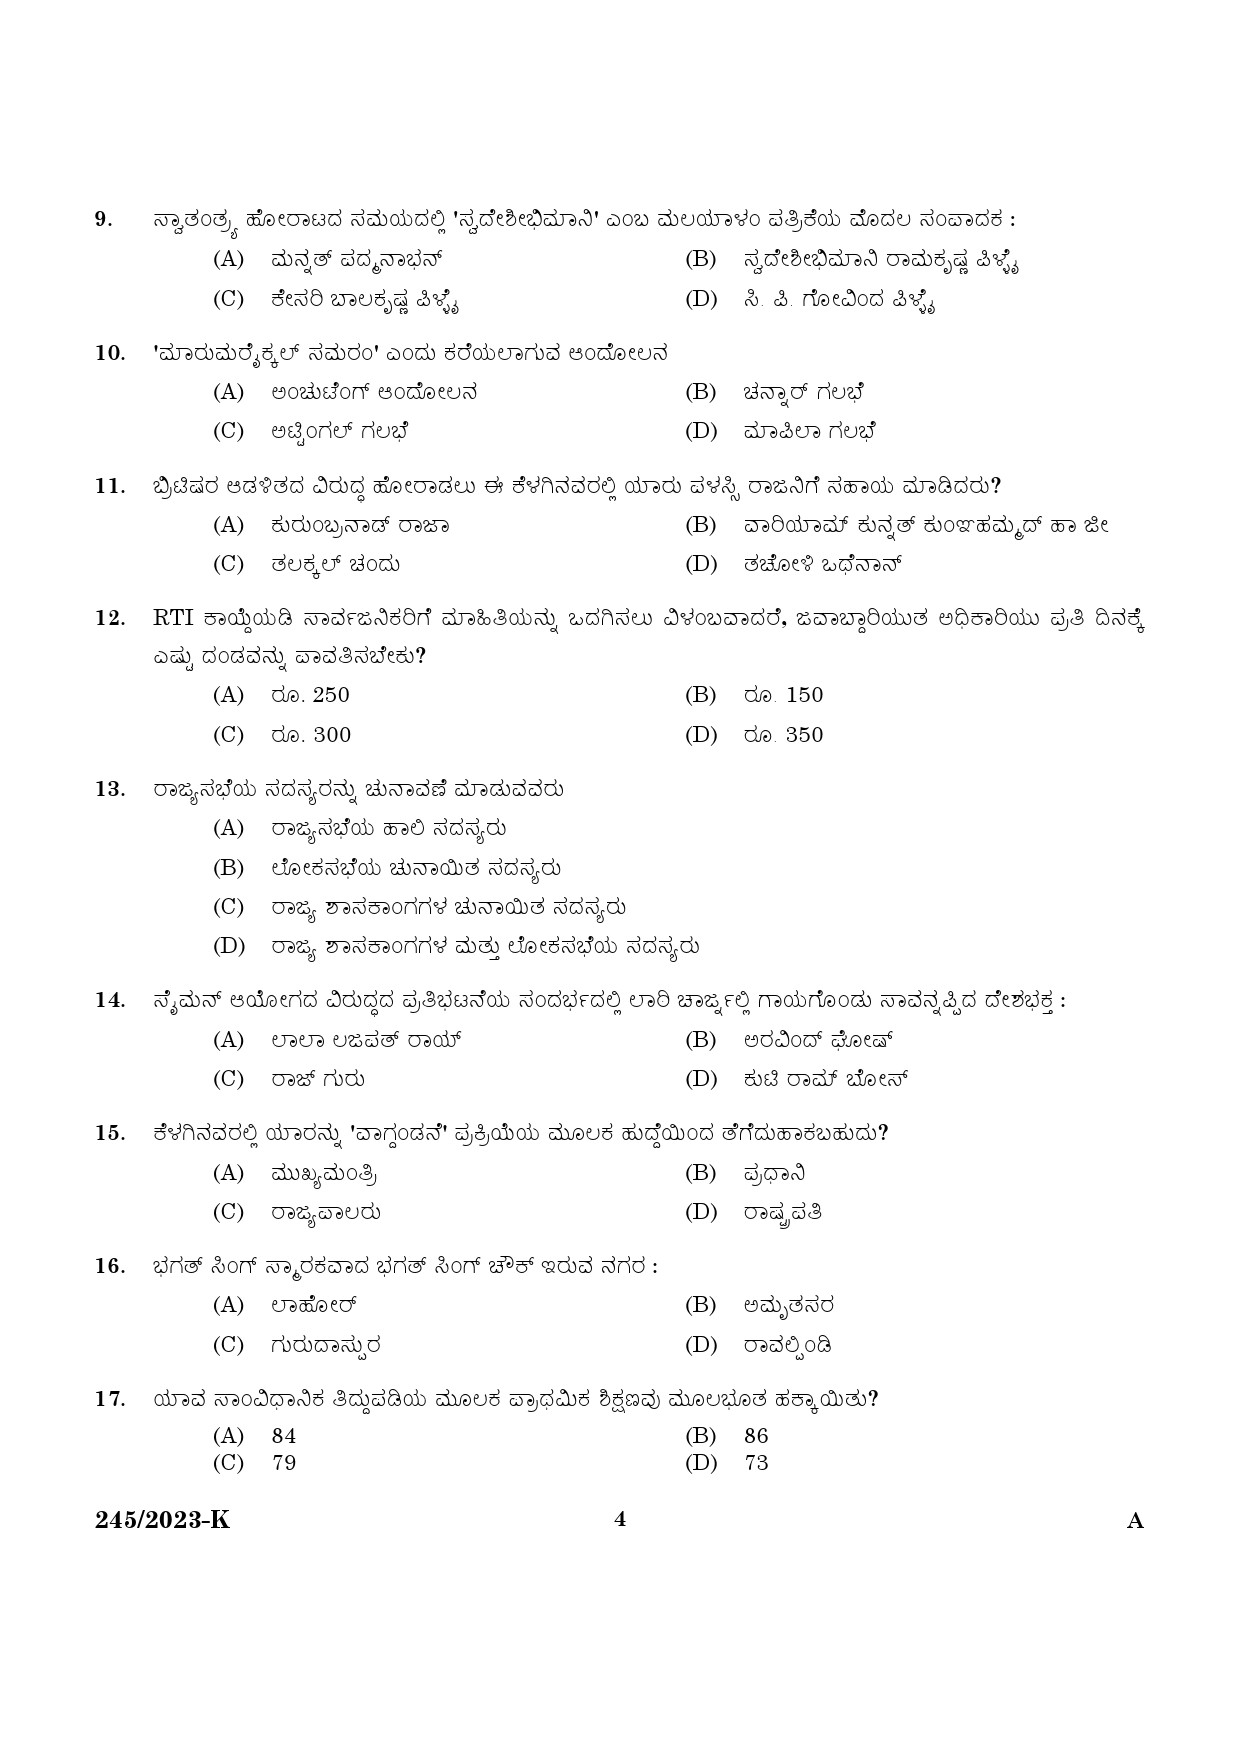 KPSC LGS Kannada Exam 2023 Code 2452023 K 2